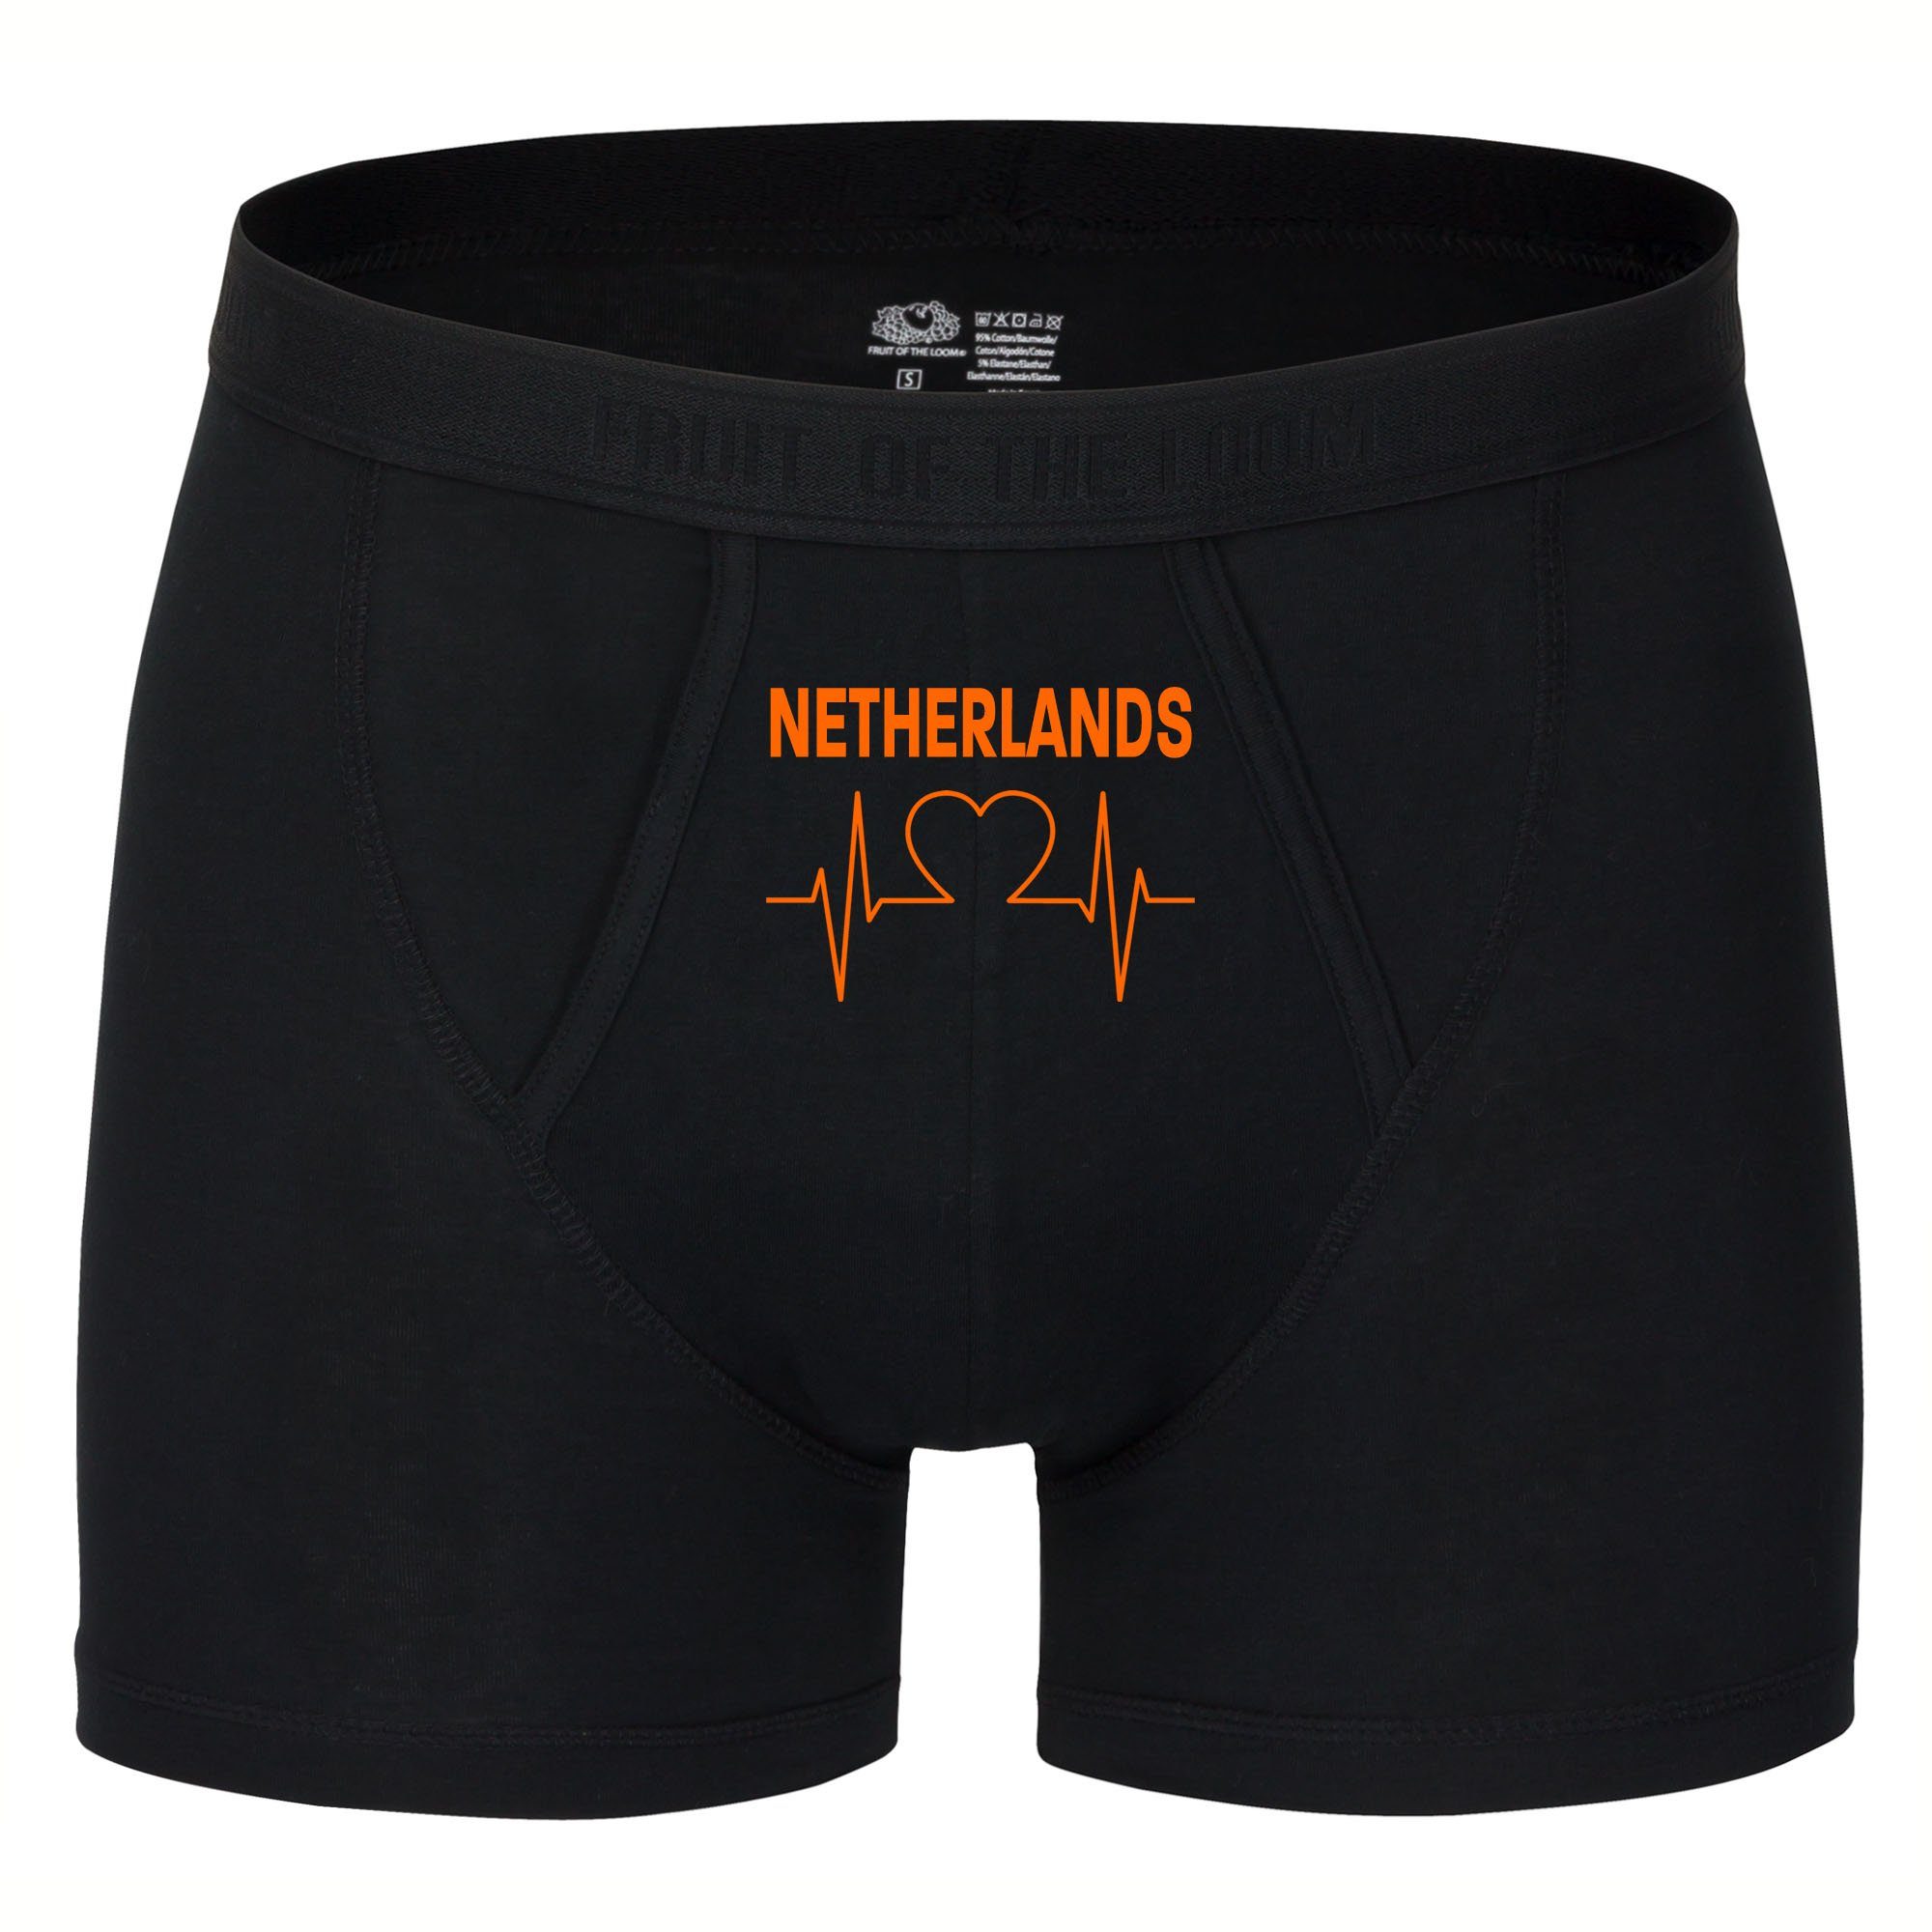 multifanshop Boxershorts Netherlands - Herzschlag - Unterwäsche